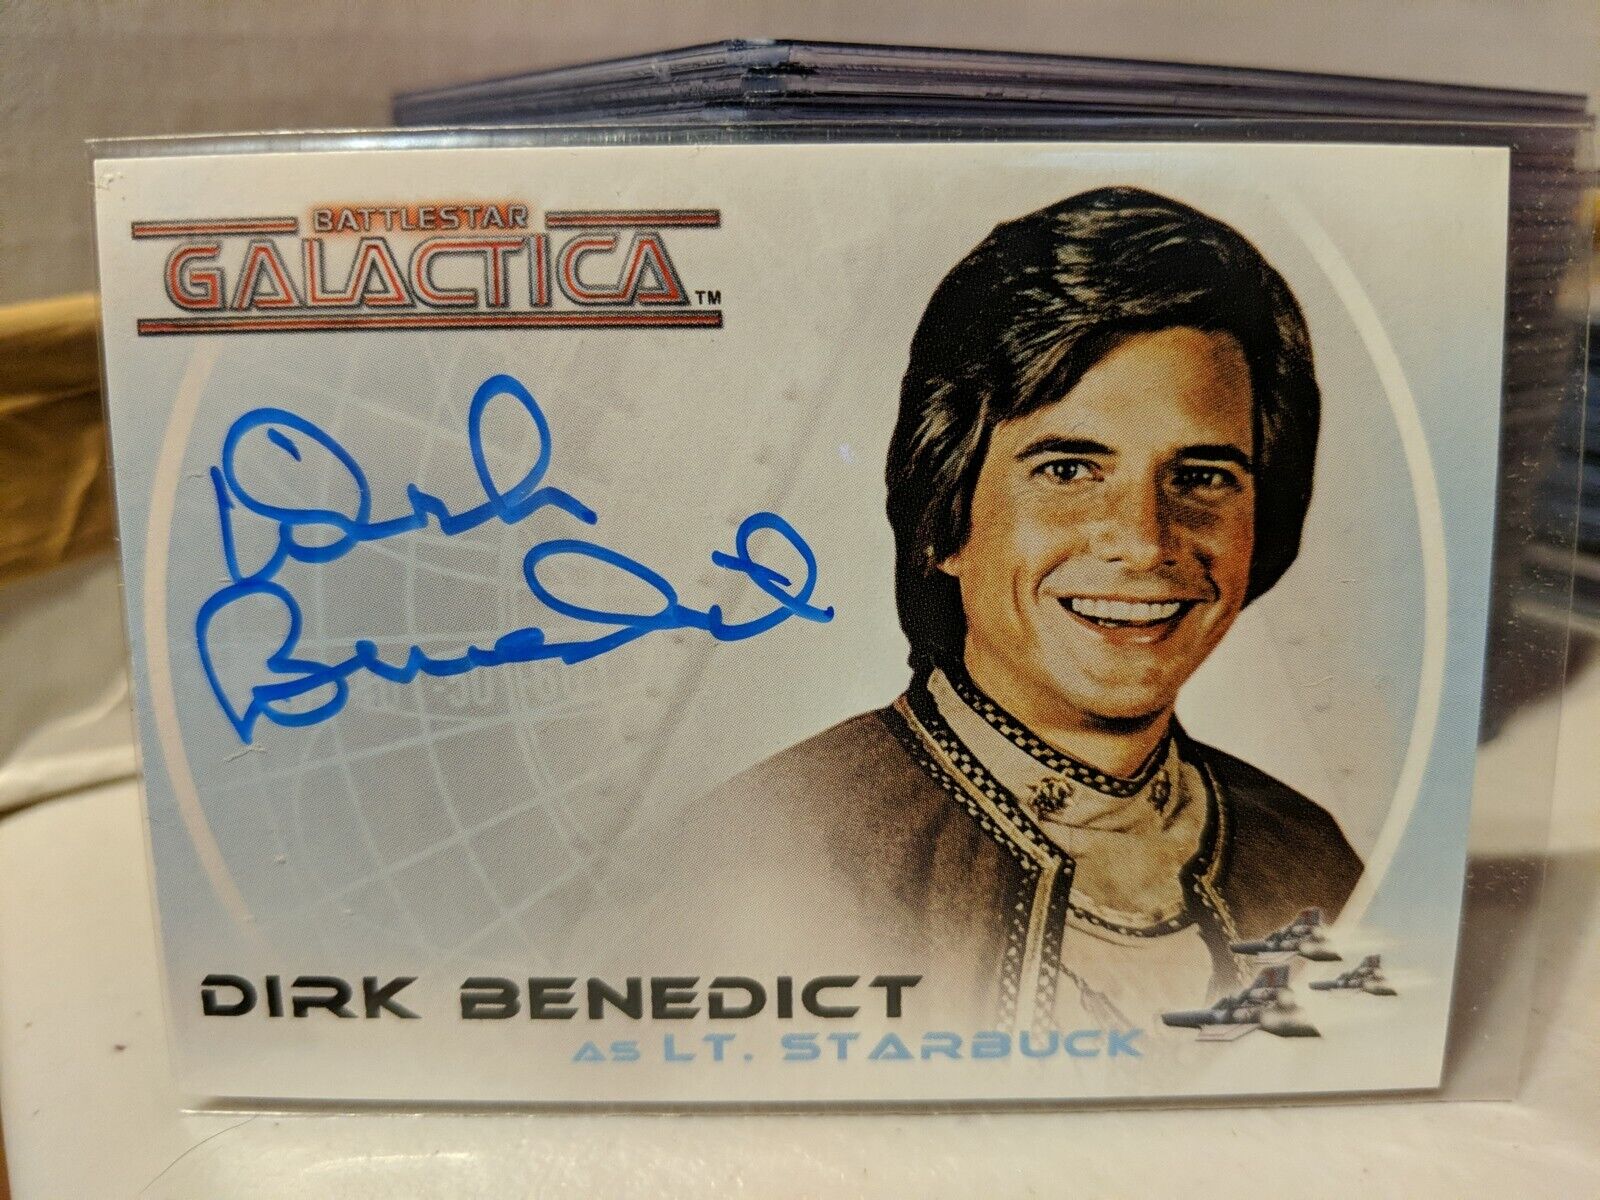 Complete Battlestar Galactica Dirk Benedict A2 Autograph Card - Lt Starbuck 2004